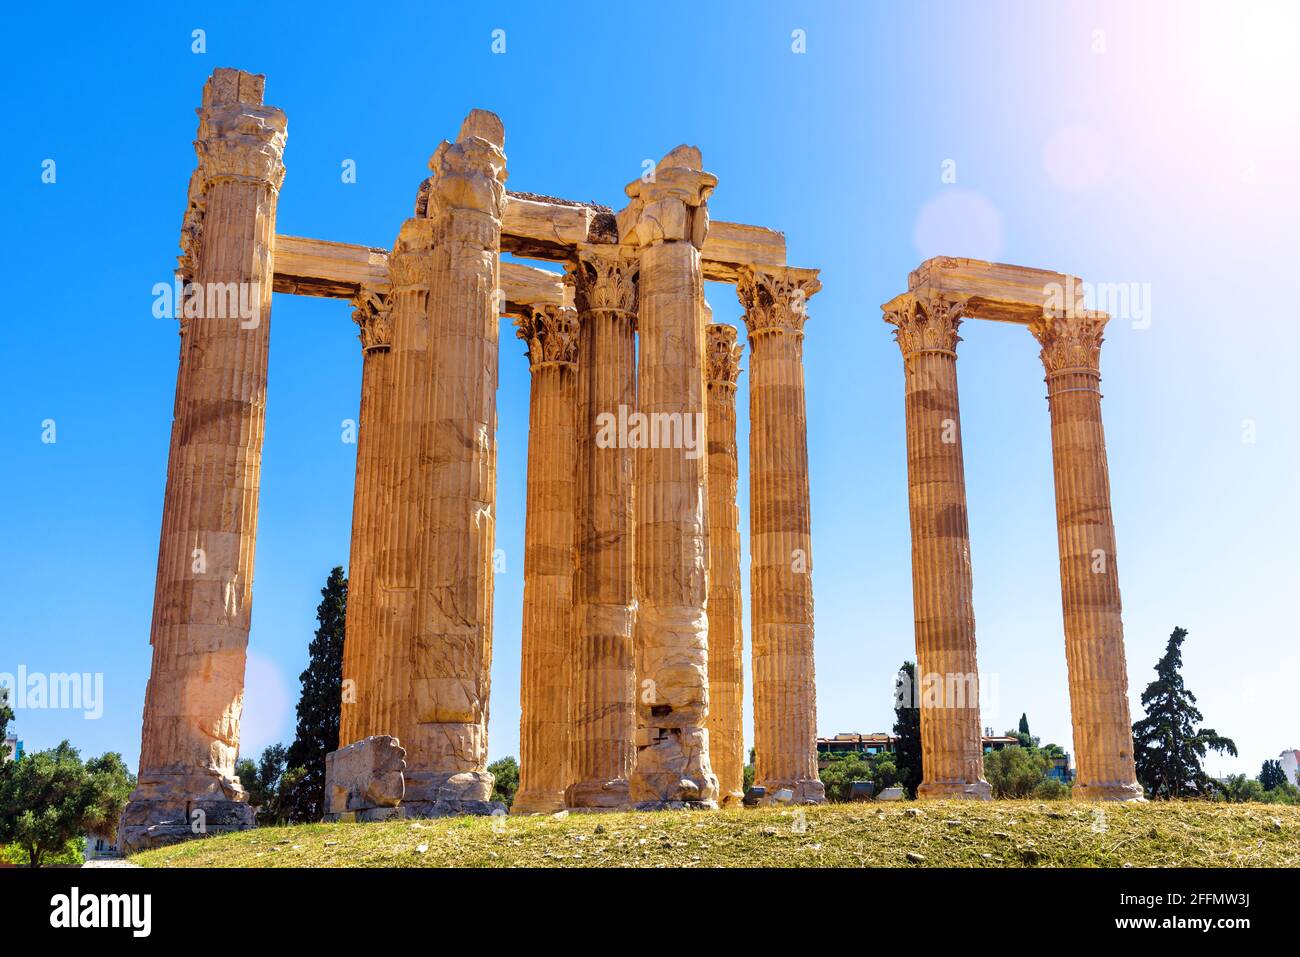 Tempel des olympischen Zeus in Athen, Griechenland, Europa. Das antike Zeus-Gebäude ist ein berühmtes Wahrzeichen des alten Athen. Sonniger Blick auf die klassischen griechischen Ruinen auf b Stockfoto